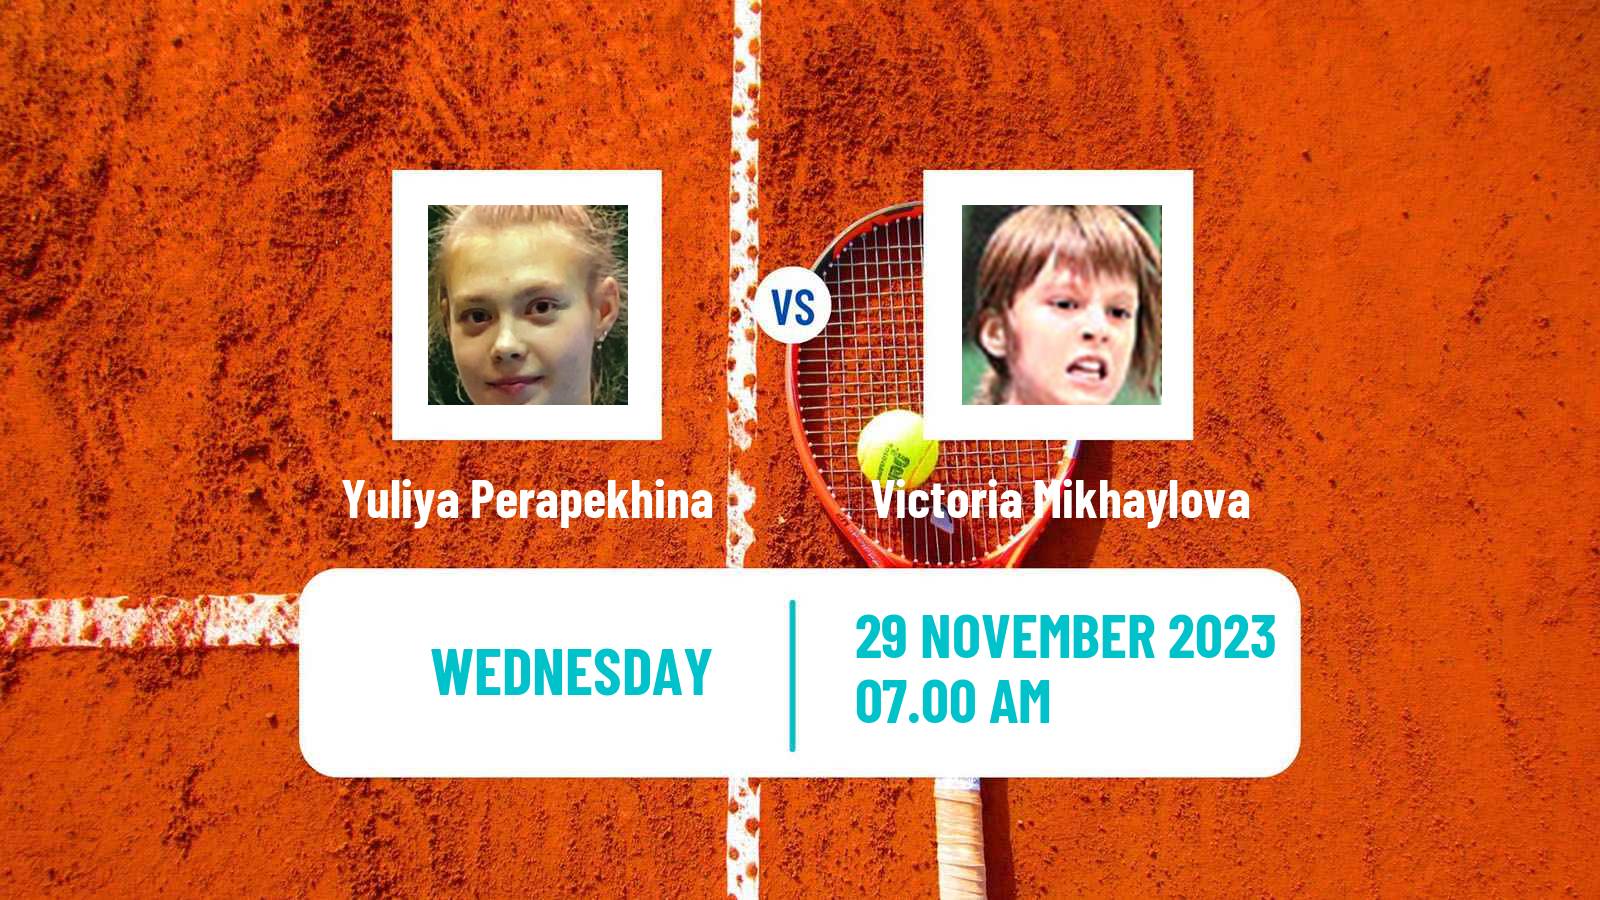 Tennis ITF W15 Sharm Elsheikh 20 Women Yuliya Perapekhina - Victoria Mikhaylova